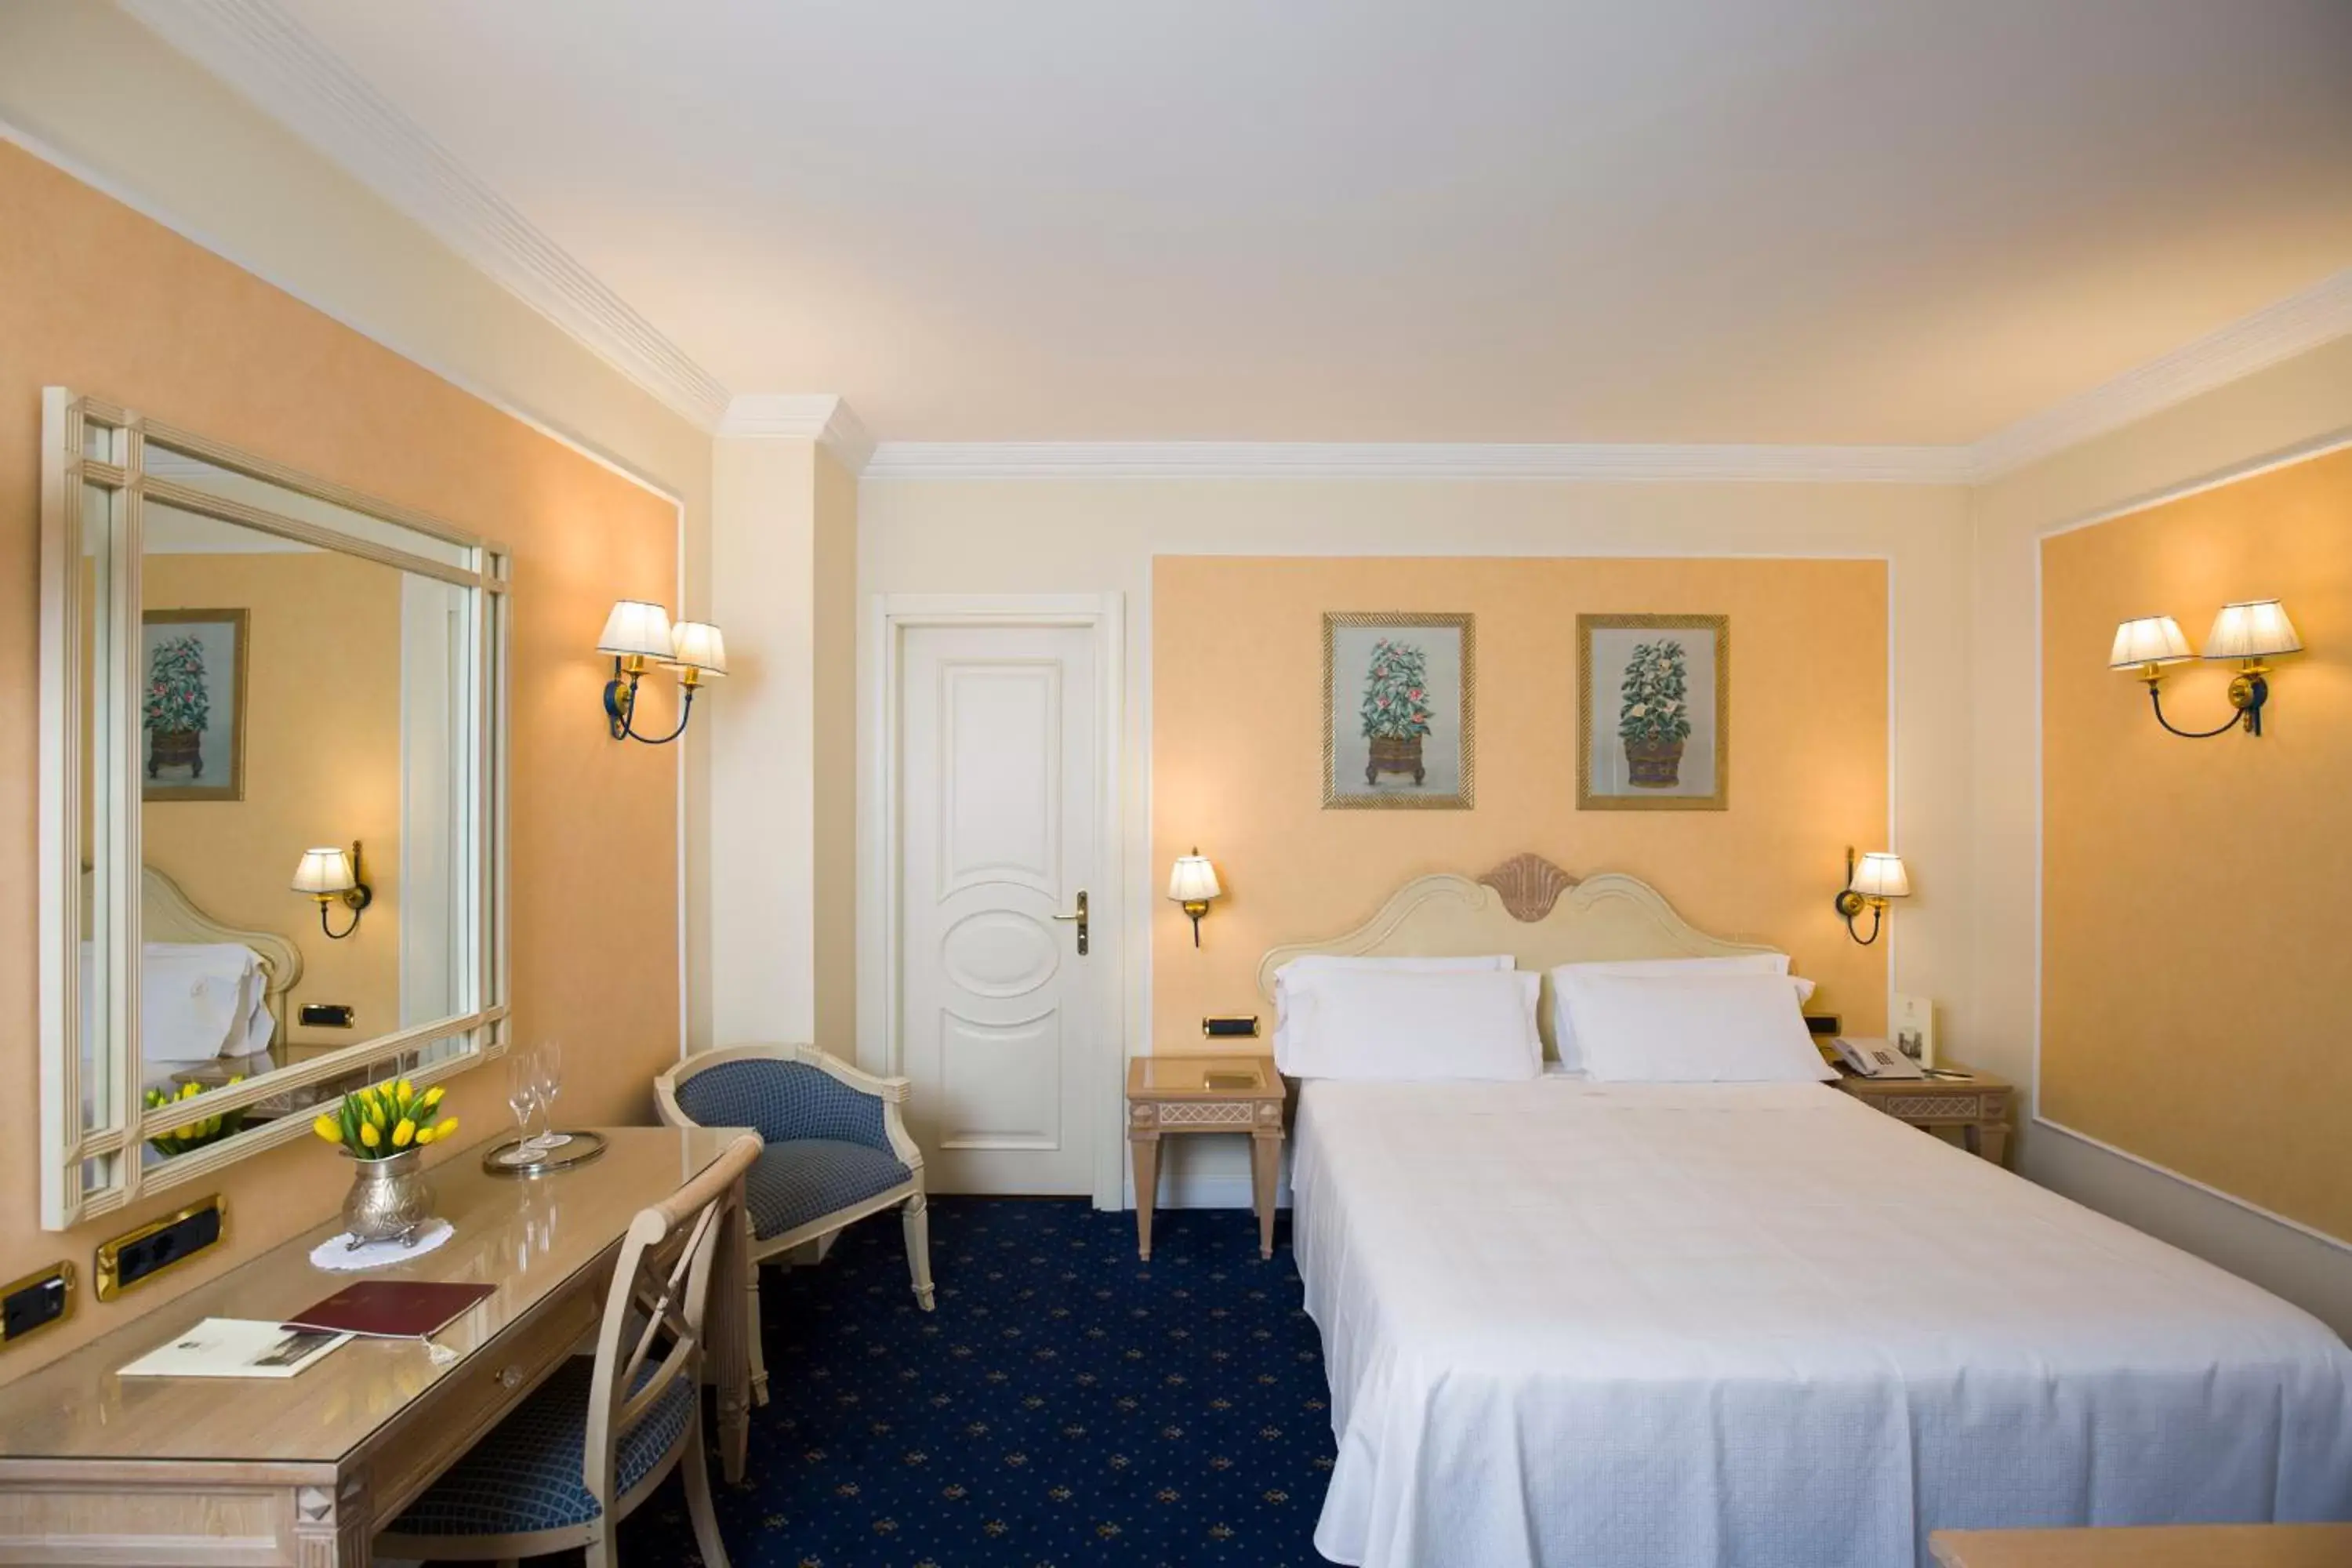 Bedroom, Room Photo in Palazzo Alabardieri